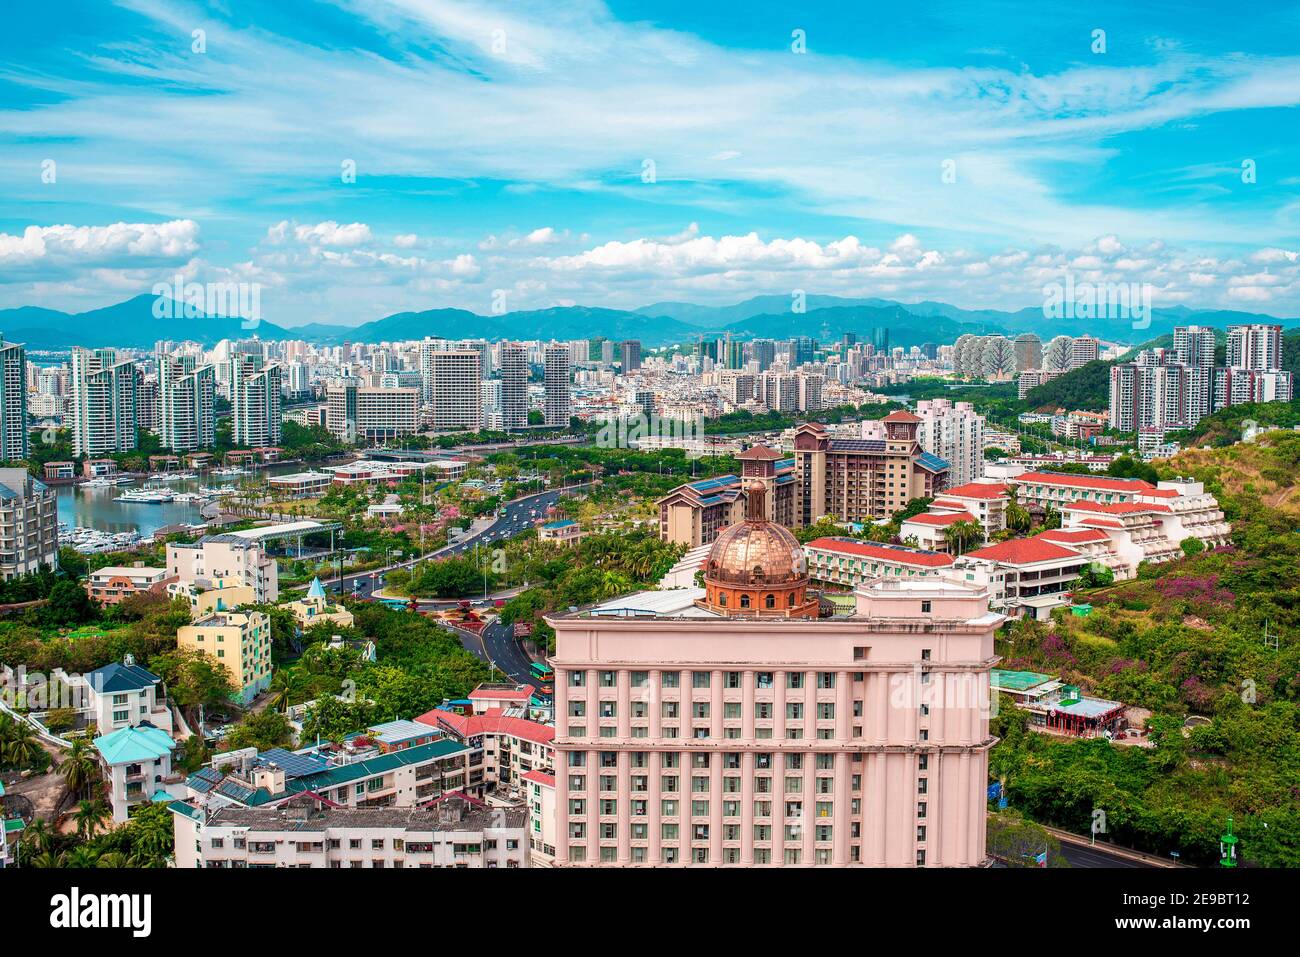 Ville de Sanya, île de Hainan. Vue sur le centre-ville depuis le haut. Tir horizontal. Hainan est une île paradisiaque en Chine. Banque D'Images